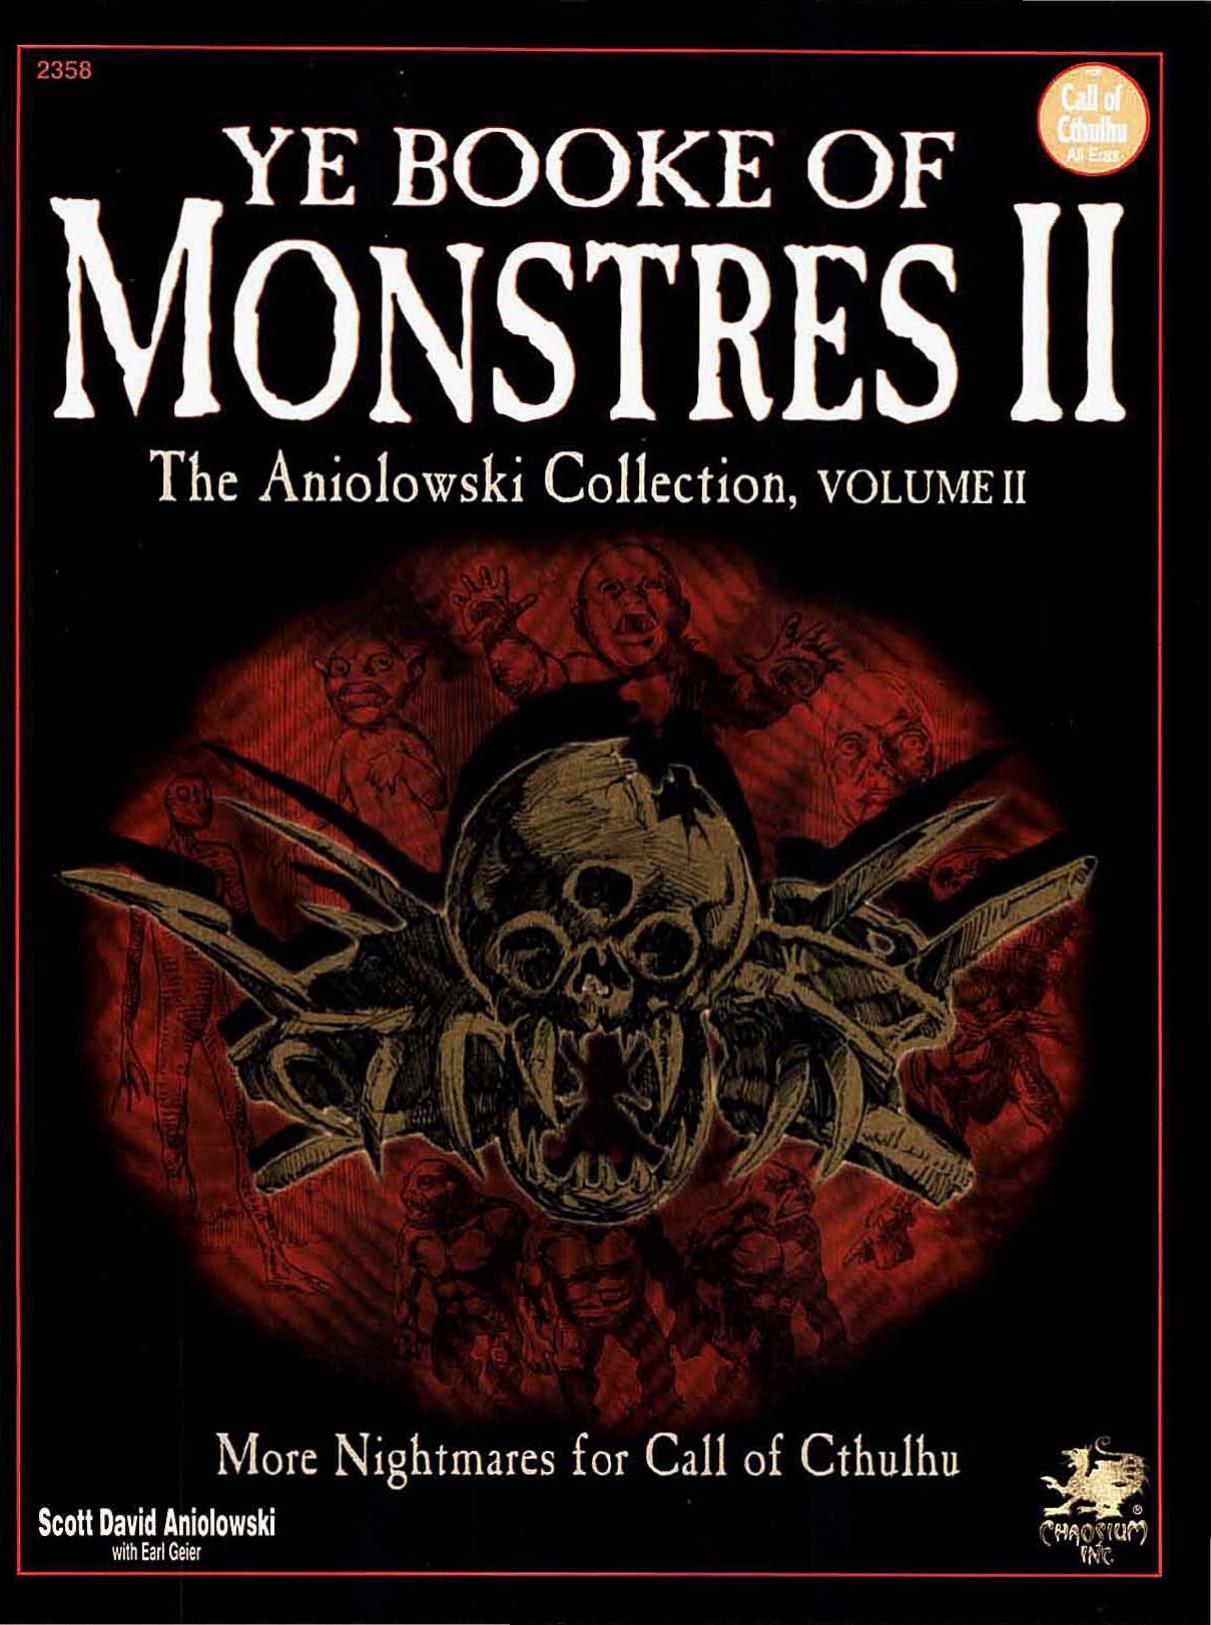 CoC Ye Booke of Monstres Volume II